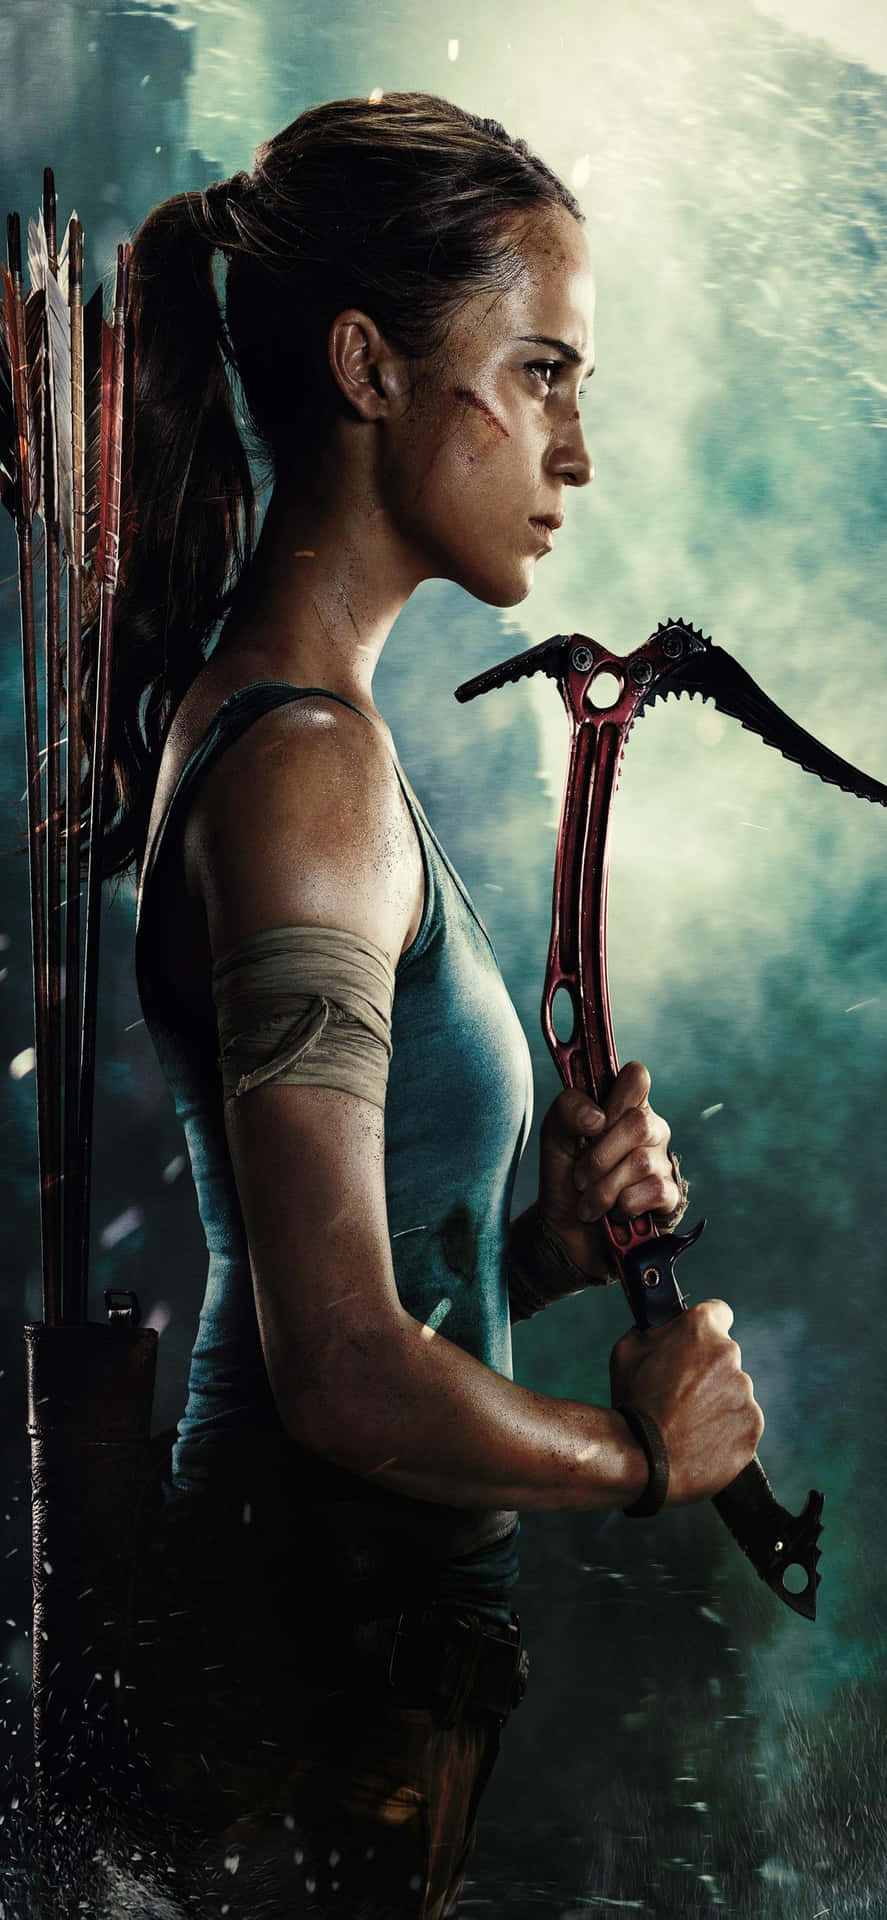 Join Lara Croft on her greatest adventure!